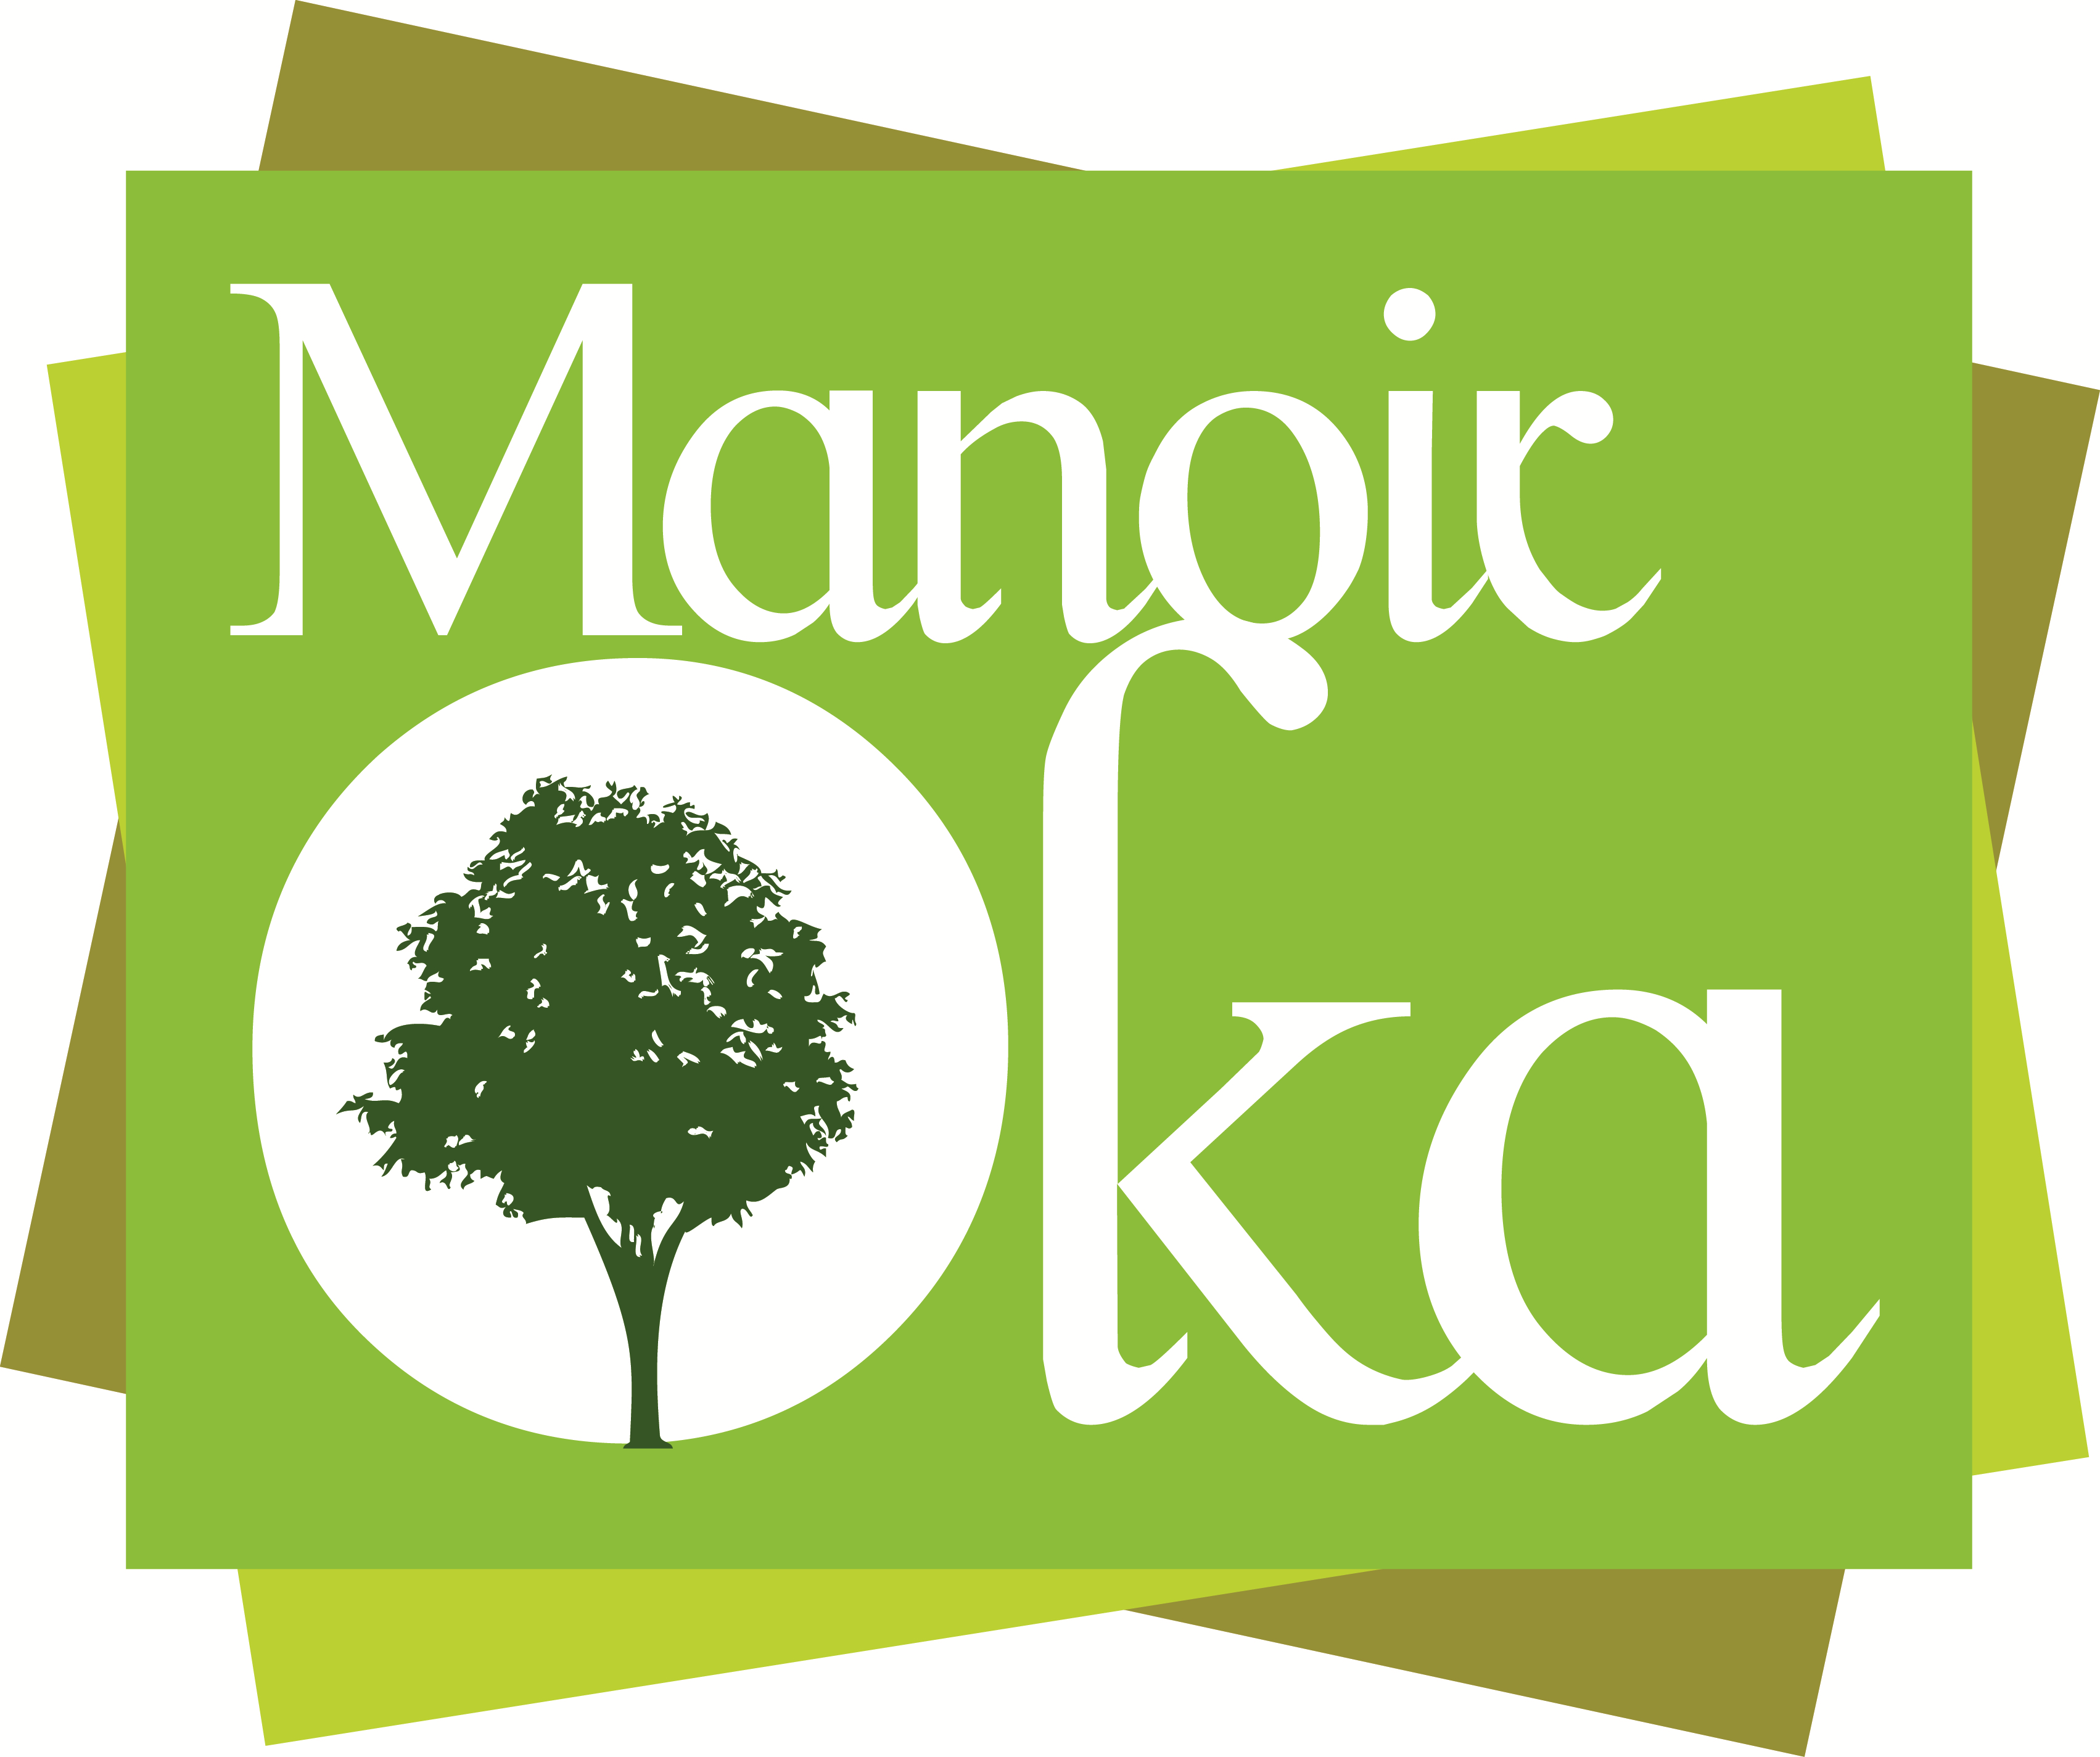 Manoir Oka